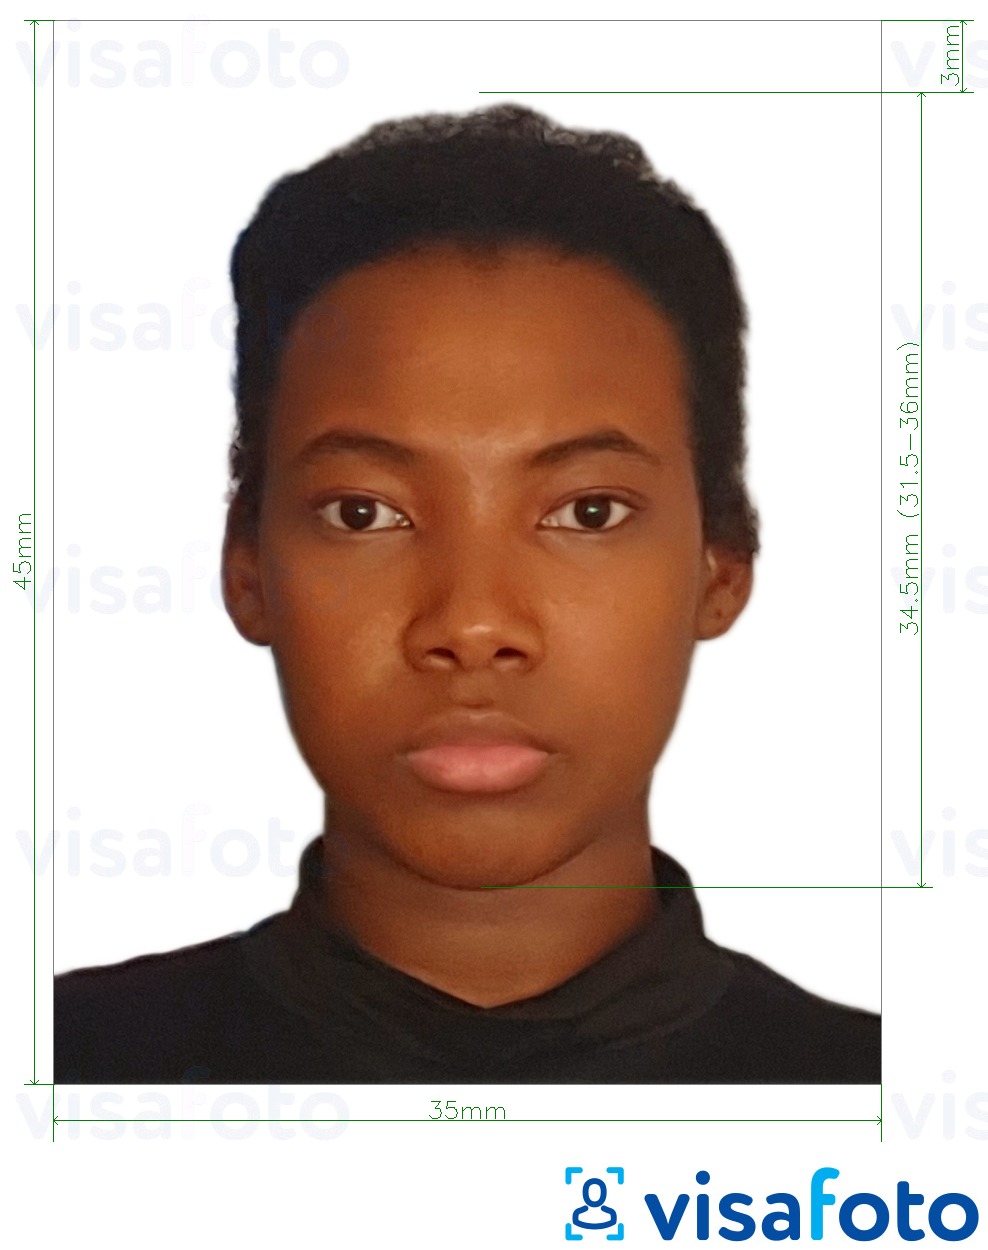 Voorbeeld van foto voor Mozambique visum 35x45 mm (3,5x4,5 cm) met exacte maatspecificatie